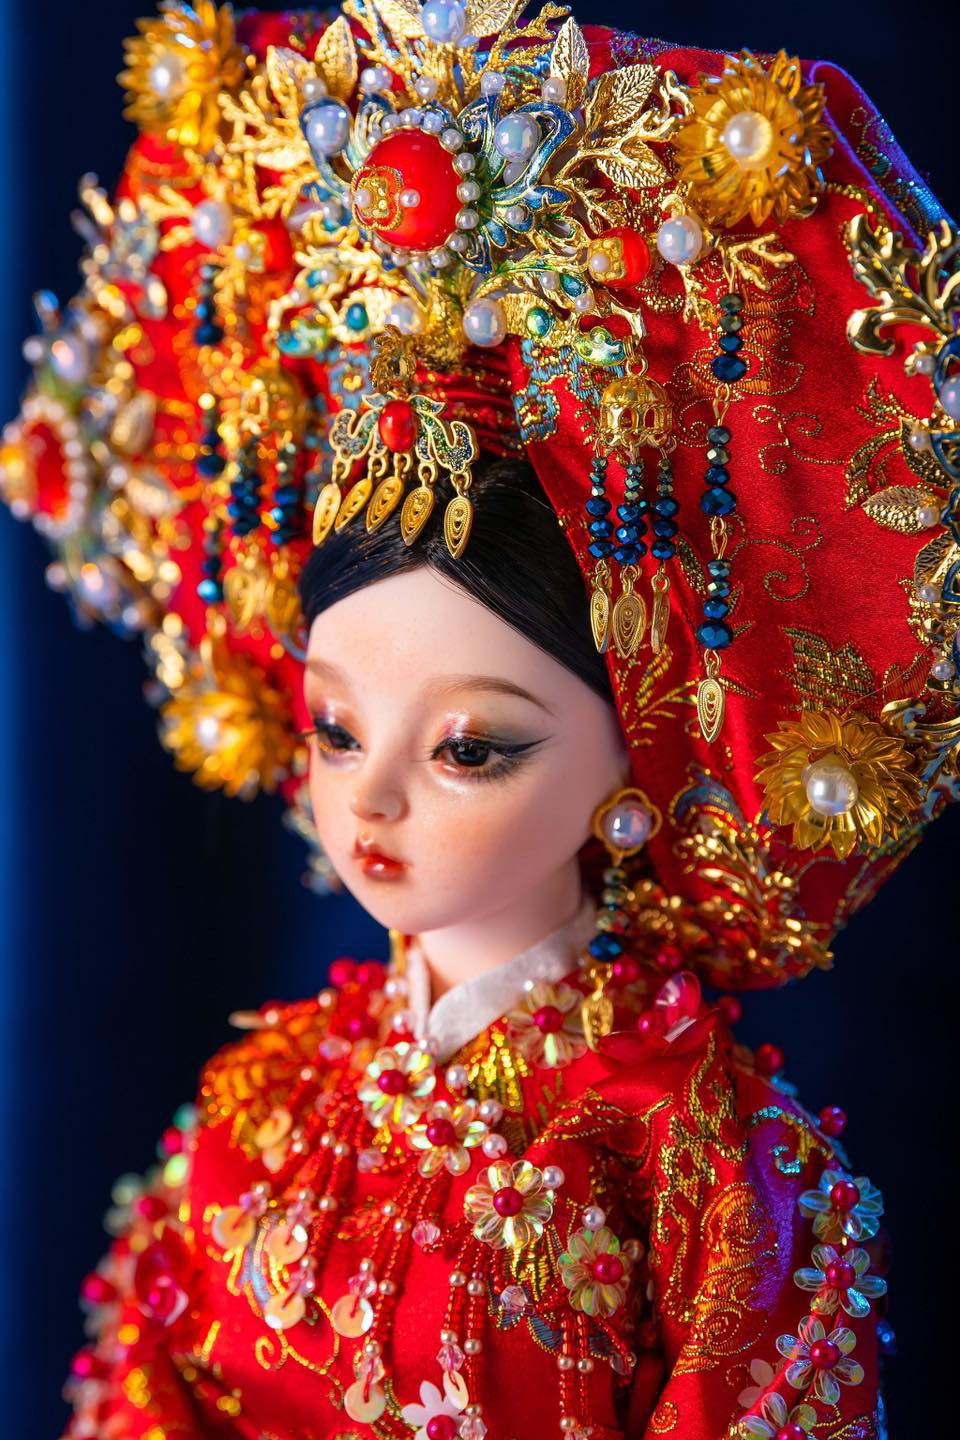 Cùng ngắm nhìn bộ sưu tập BÚP HOẠ TỨ PHỦ đặc sắc nhằm tôn vinh nét đẹp văn hoá Tín ngưỡng thờ Mẫu